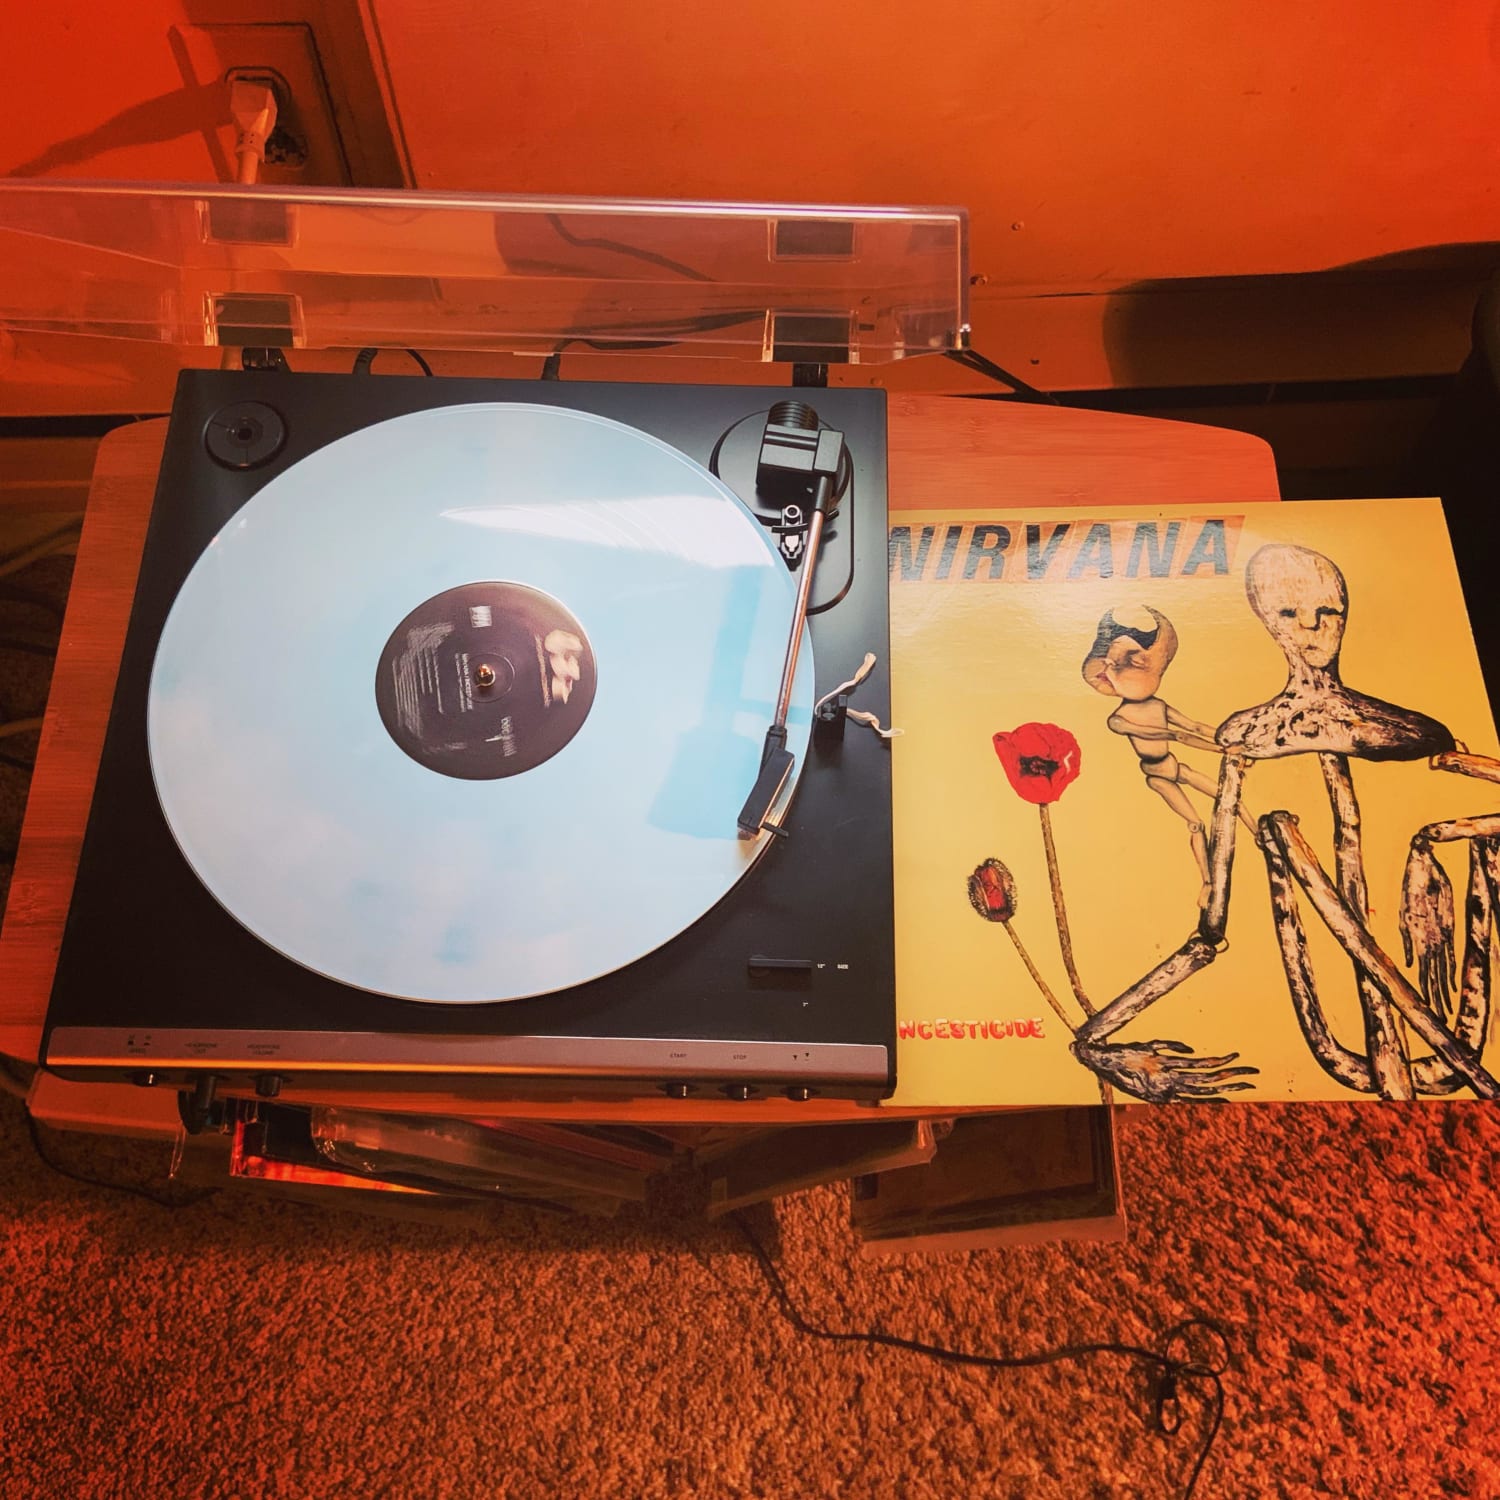 Nirvana “Incesticide” 1992